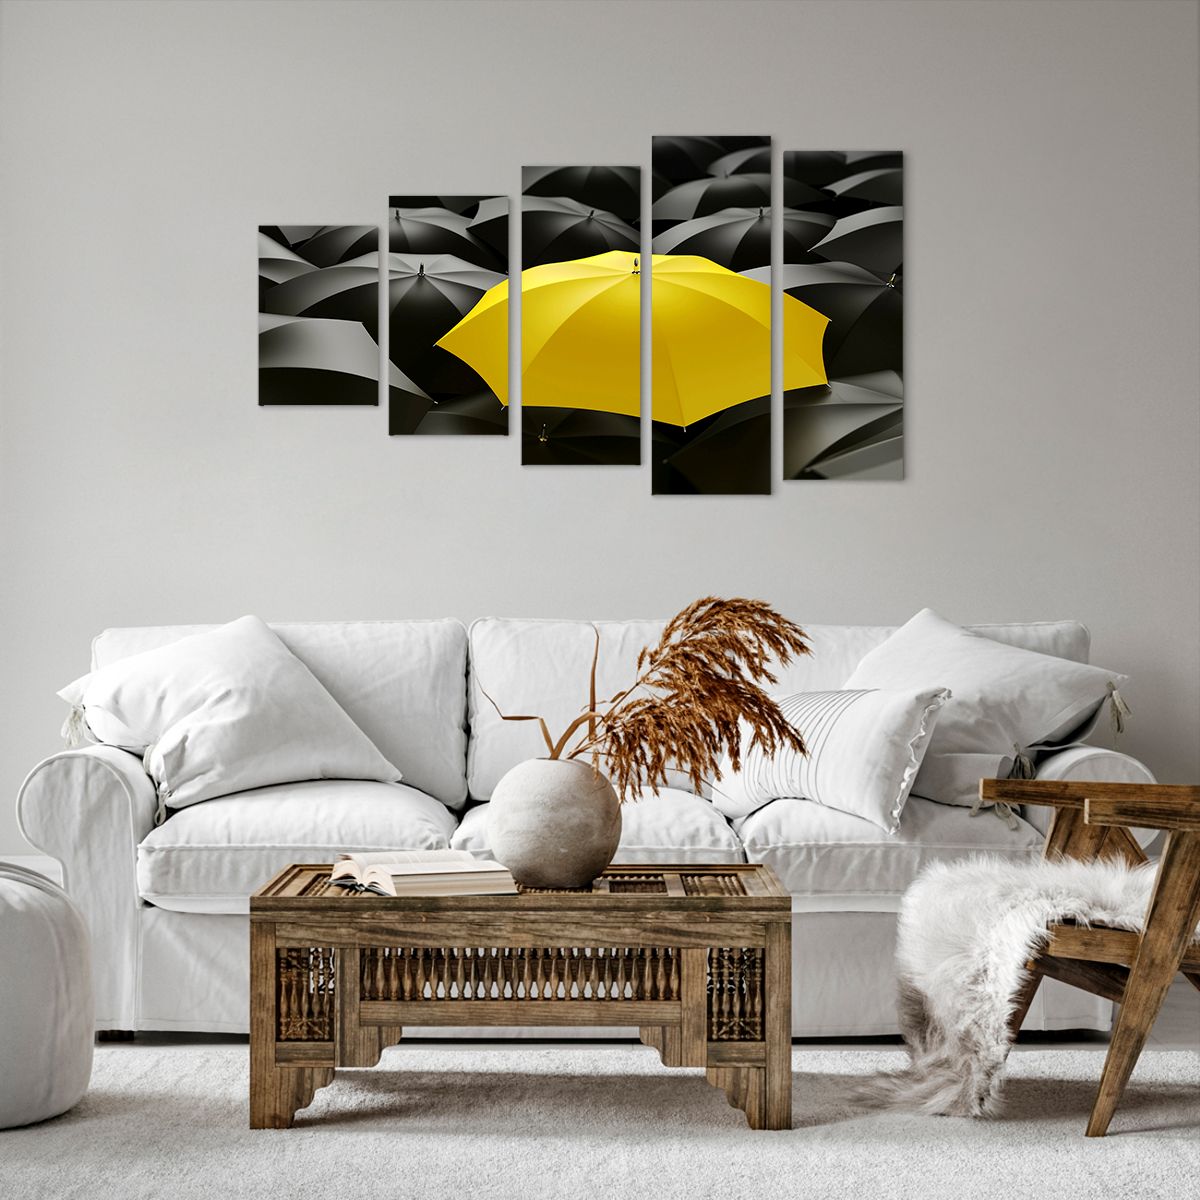 Bild auf Leinwand Gelbe Regenschirme, Bild auf Leinwand Grafik, Bild auf Leinwand Konzept, Bild auf Leinwand Abstraktion, Bild auf Leinwand Illustration